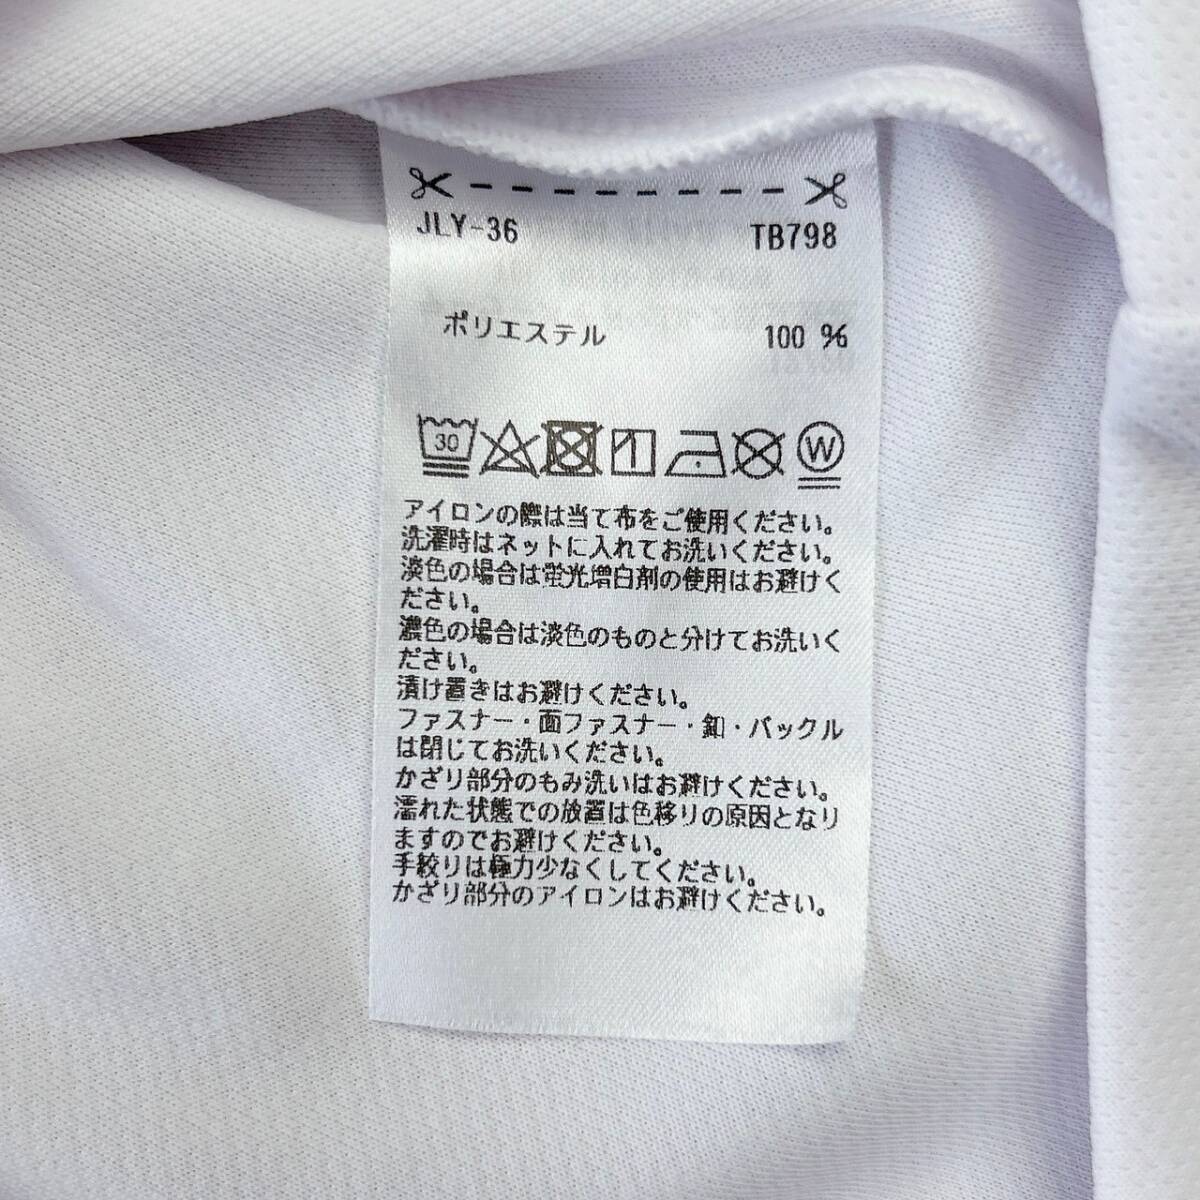 [Taylor Made] TaylorMade рубашка-поло с коротким рукавом Golf одежда .... ощущение оттенок белого мужской M кнопка-застежка .. скорость .Rstore443010